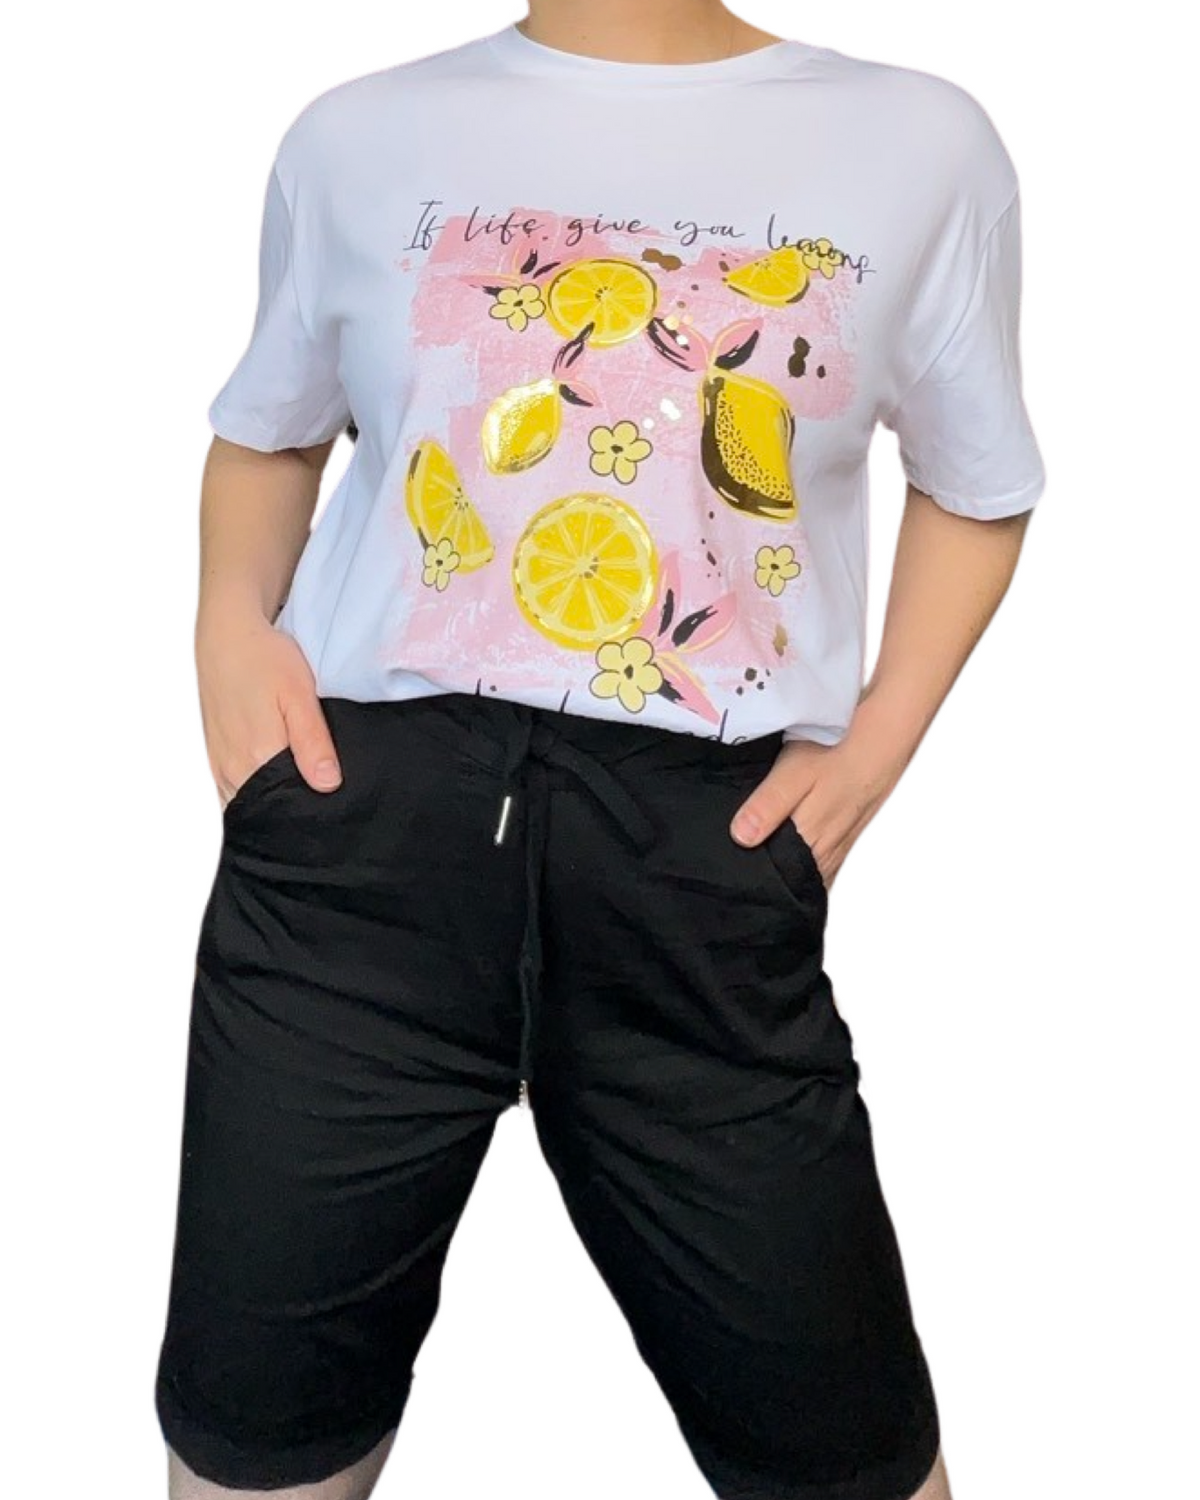 T-shirt blanc pour femme avec imprimé de citrons jaunes portée à l'intérieur du bermuda.